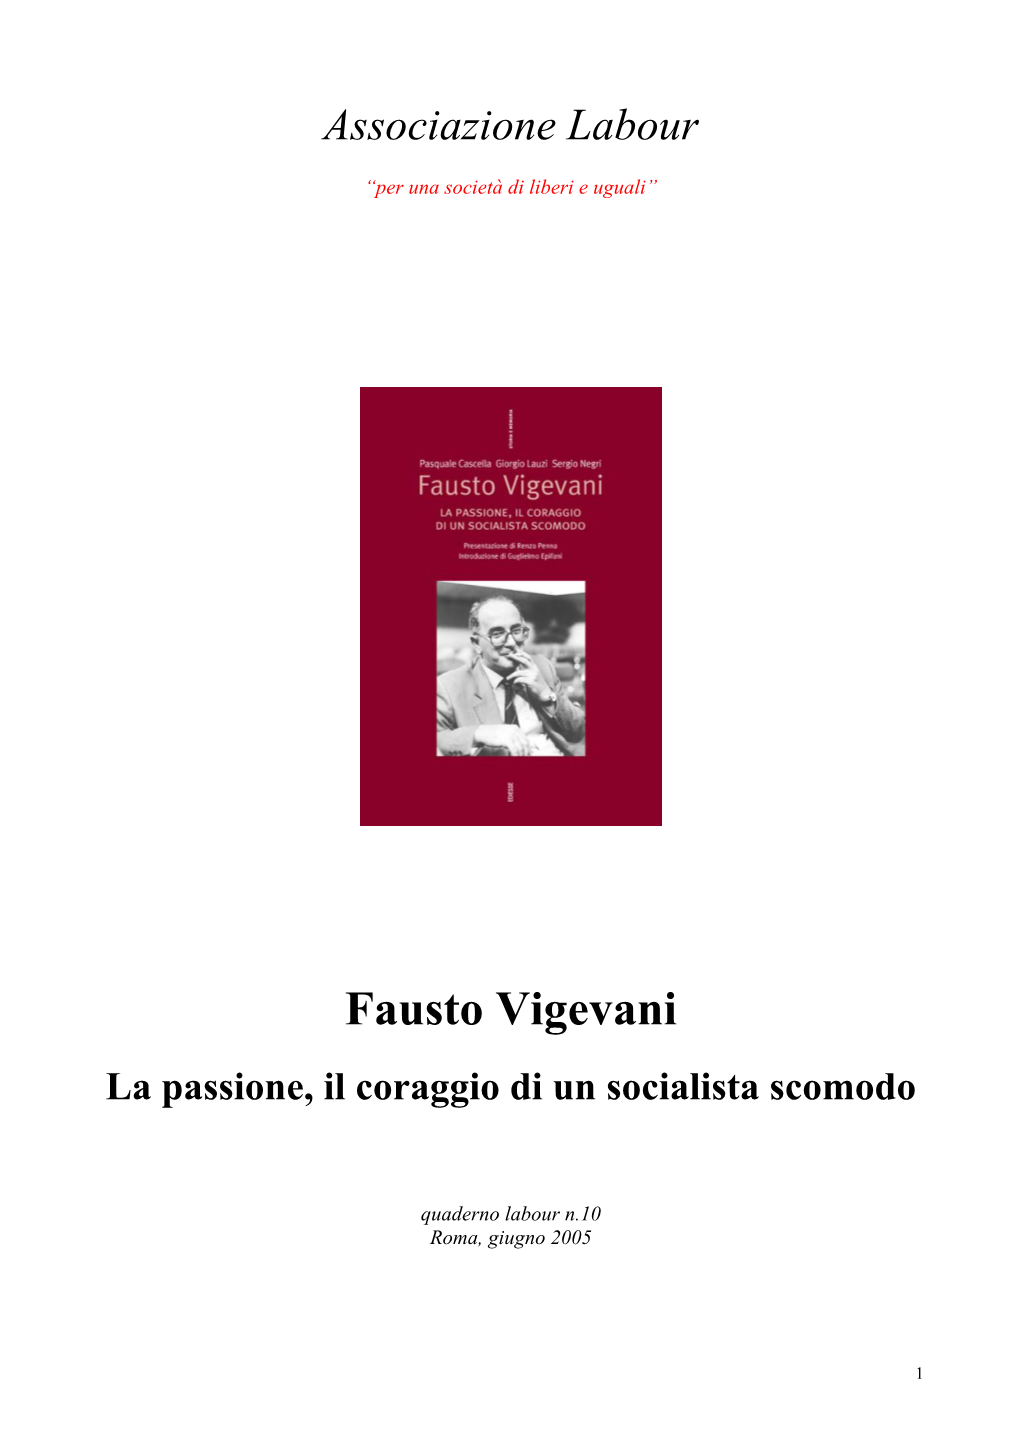 Fausto Vigevani La Passione, Il Coraggio Di Un Socialista Scomodo